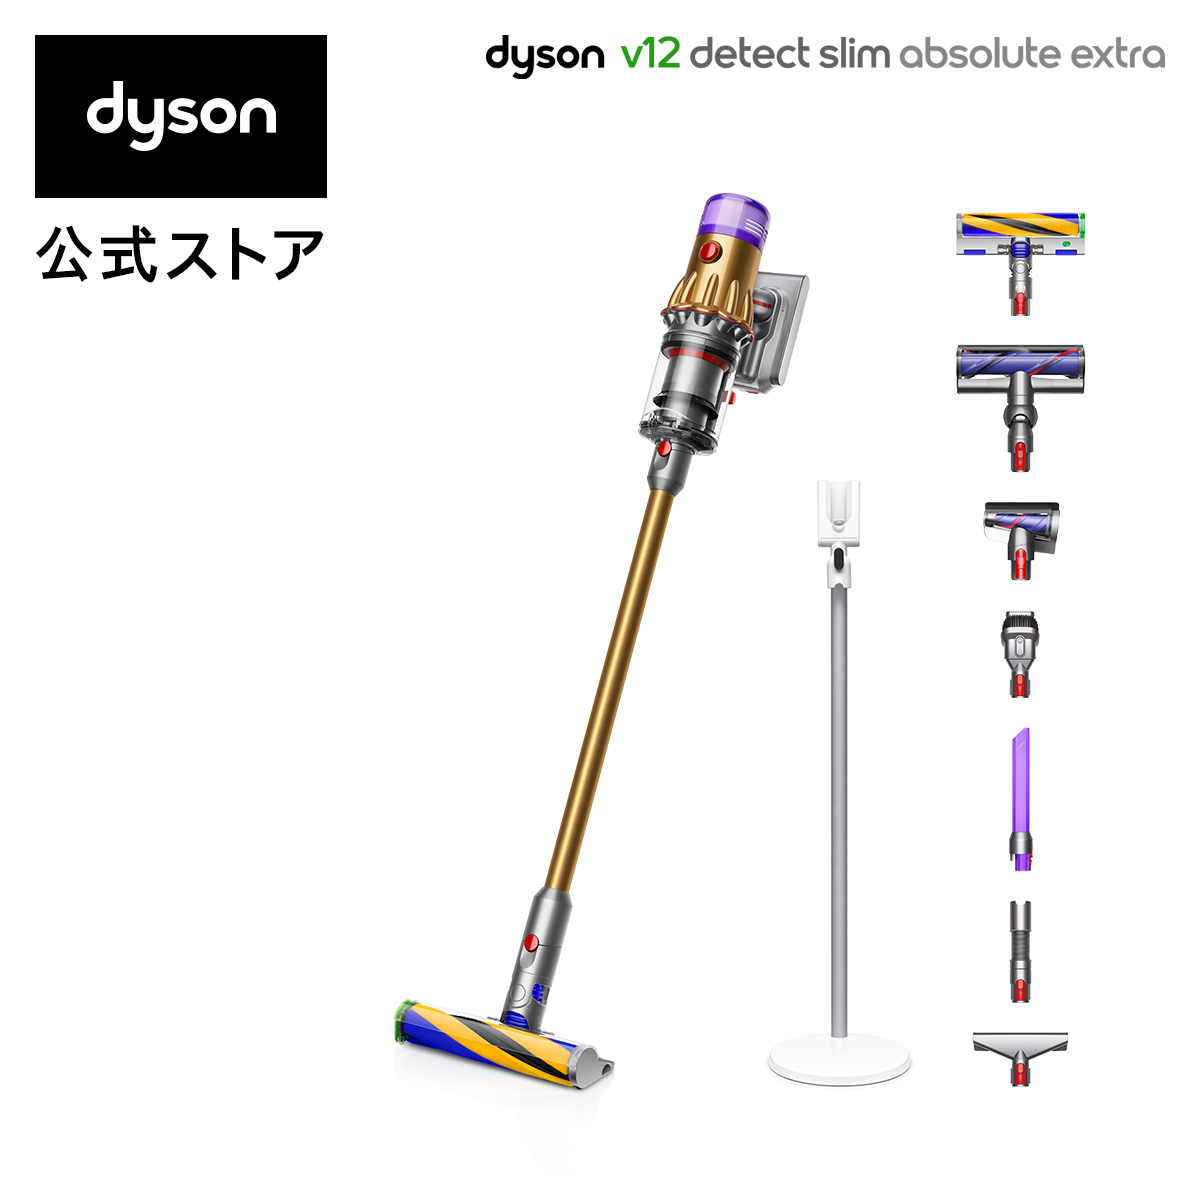 最新号掲載アイテム 超歓迎された Dyson ダイソン V12 ディテクト スリム 掃除機 dyson コードレスクリーナー SV20ABLEXT 2021年モデル Slim Absolute 5 直販限定 サイクロン式 コードレス掃除機 Extra 26新発売 Detect